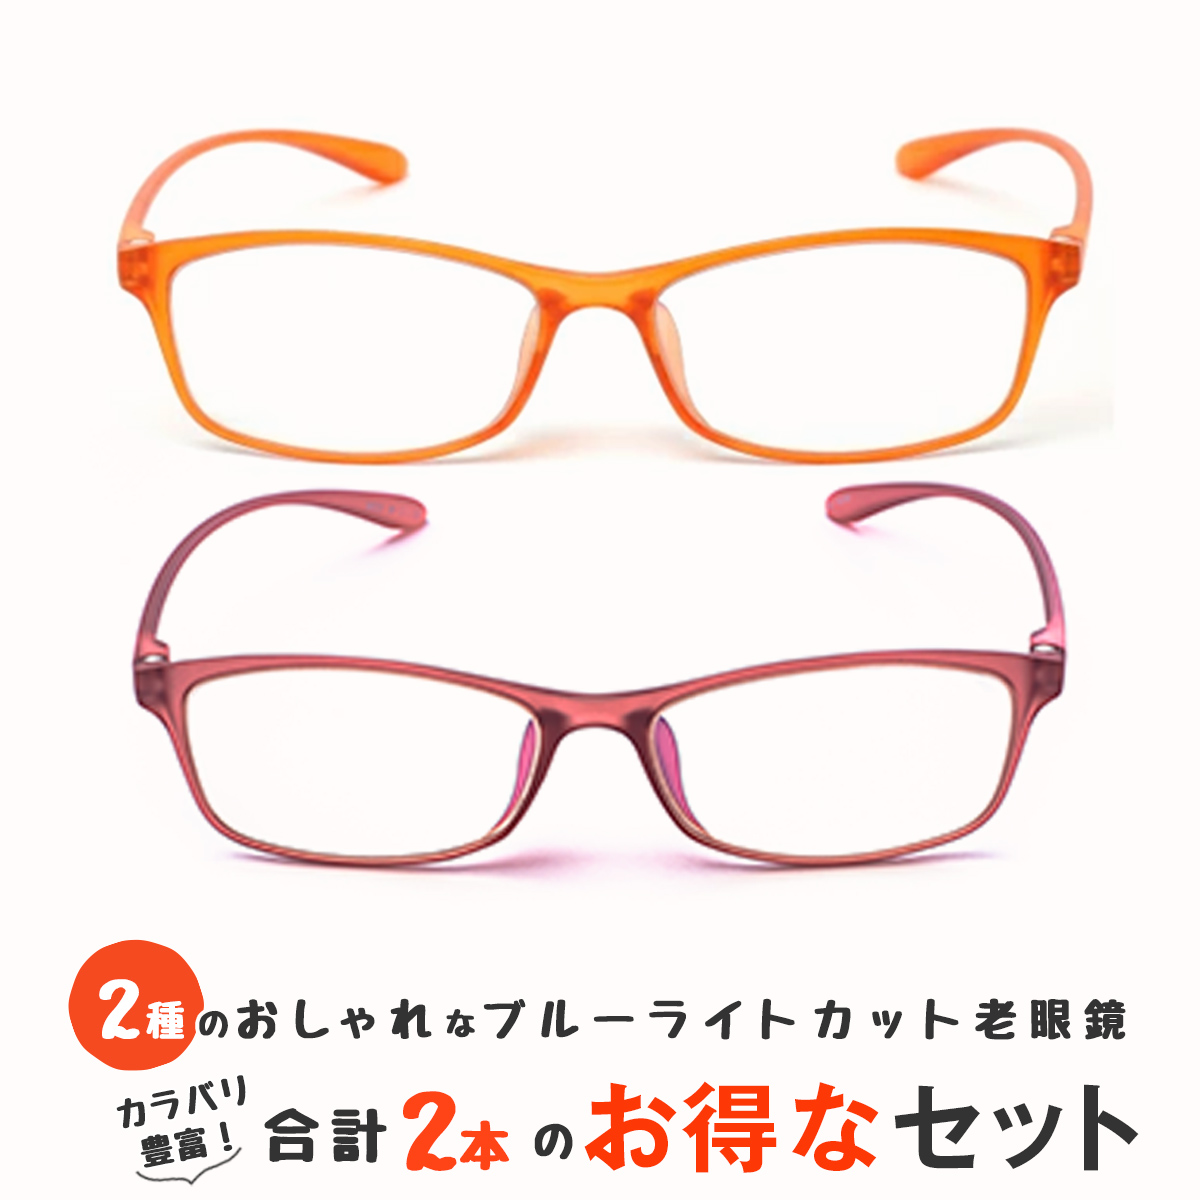 お得な2本セット 老眼鏡 ブルーライトカット 紫外線カット おしゃれ メンズ レディース 男性用 女性用 超軽量 シニアグラス カラフルで軽量のパソコン・スマホ用老眼鏡 リーディンググラス(M209,M211) 老眼鏡